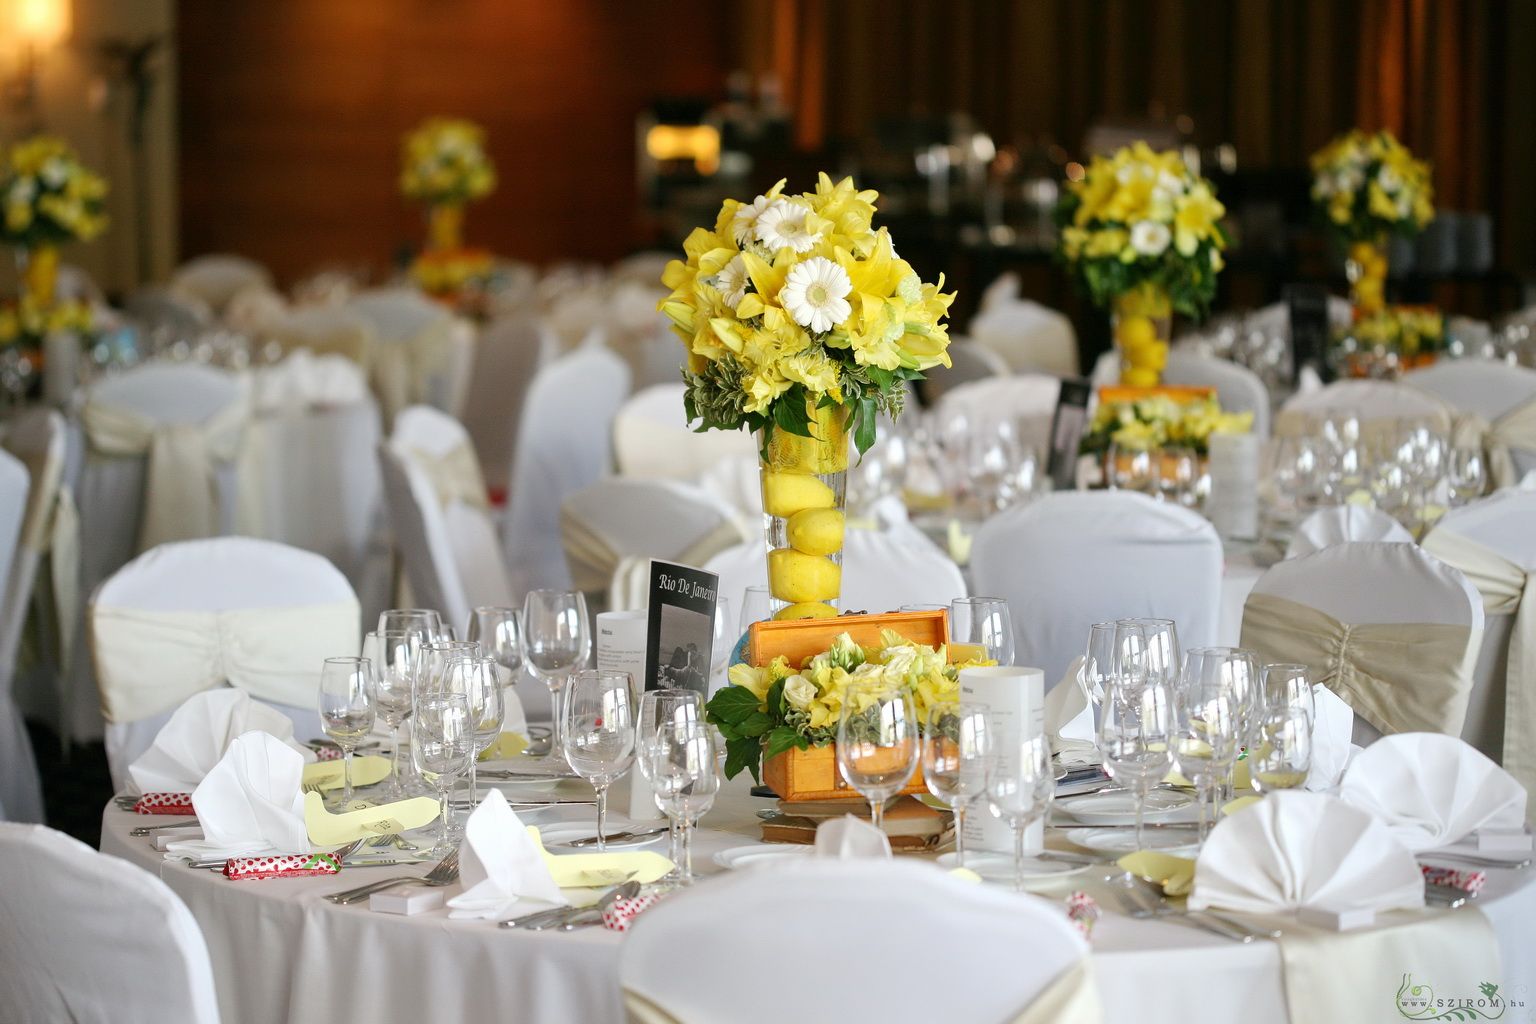 Magas vázás dísz, könyv és ládikó sárga dekorral, Marriott Hotel (liliom, gerbera, kardvirág), esküvő